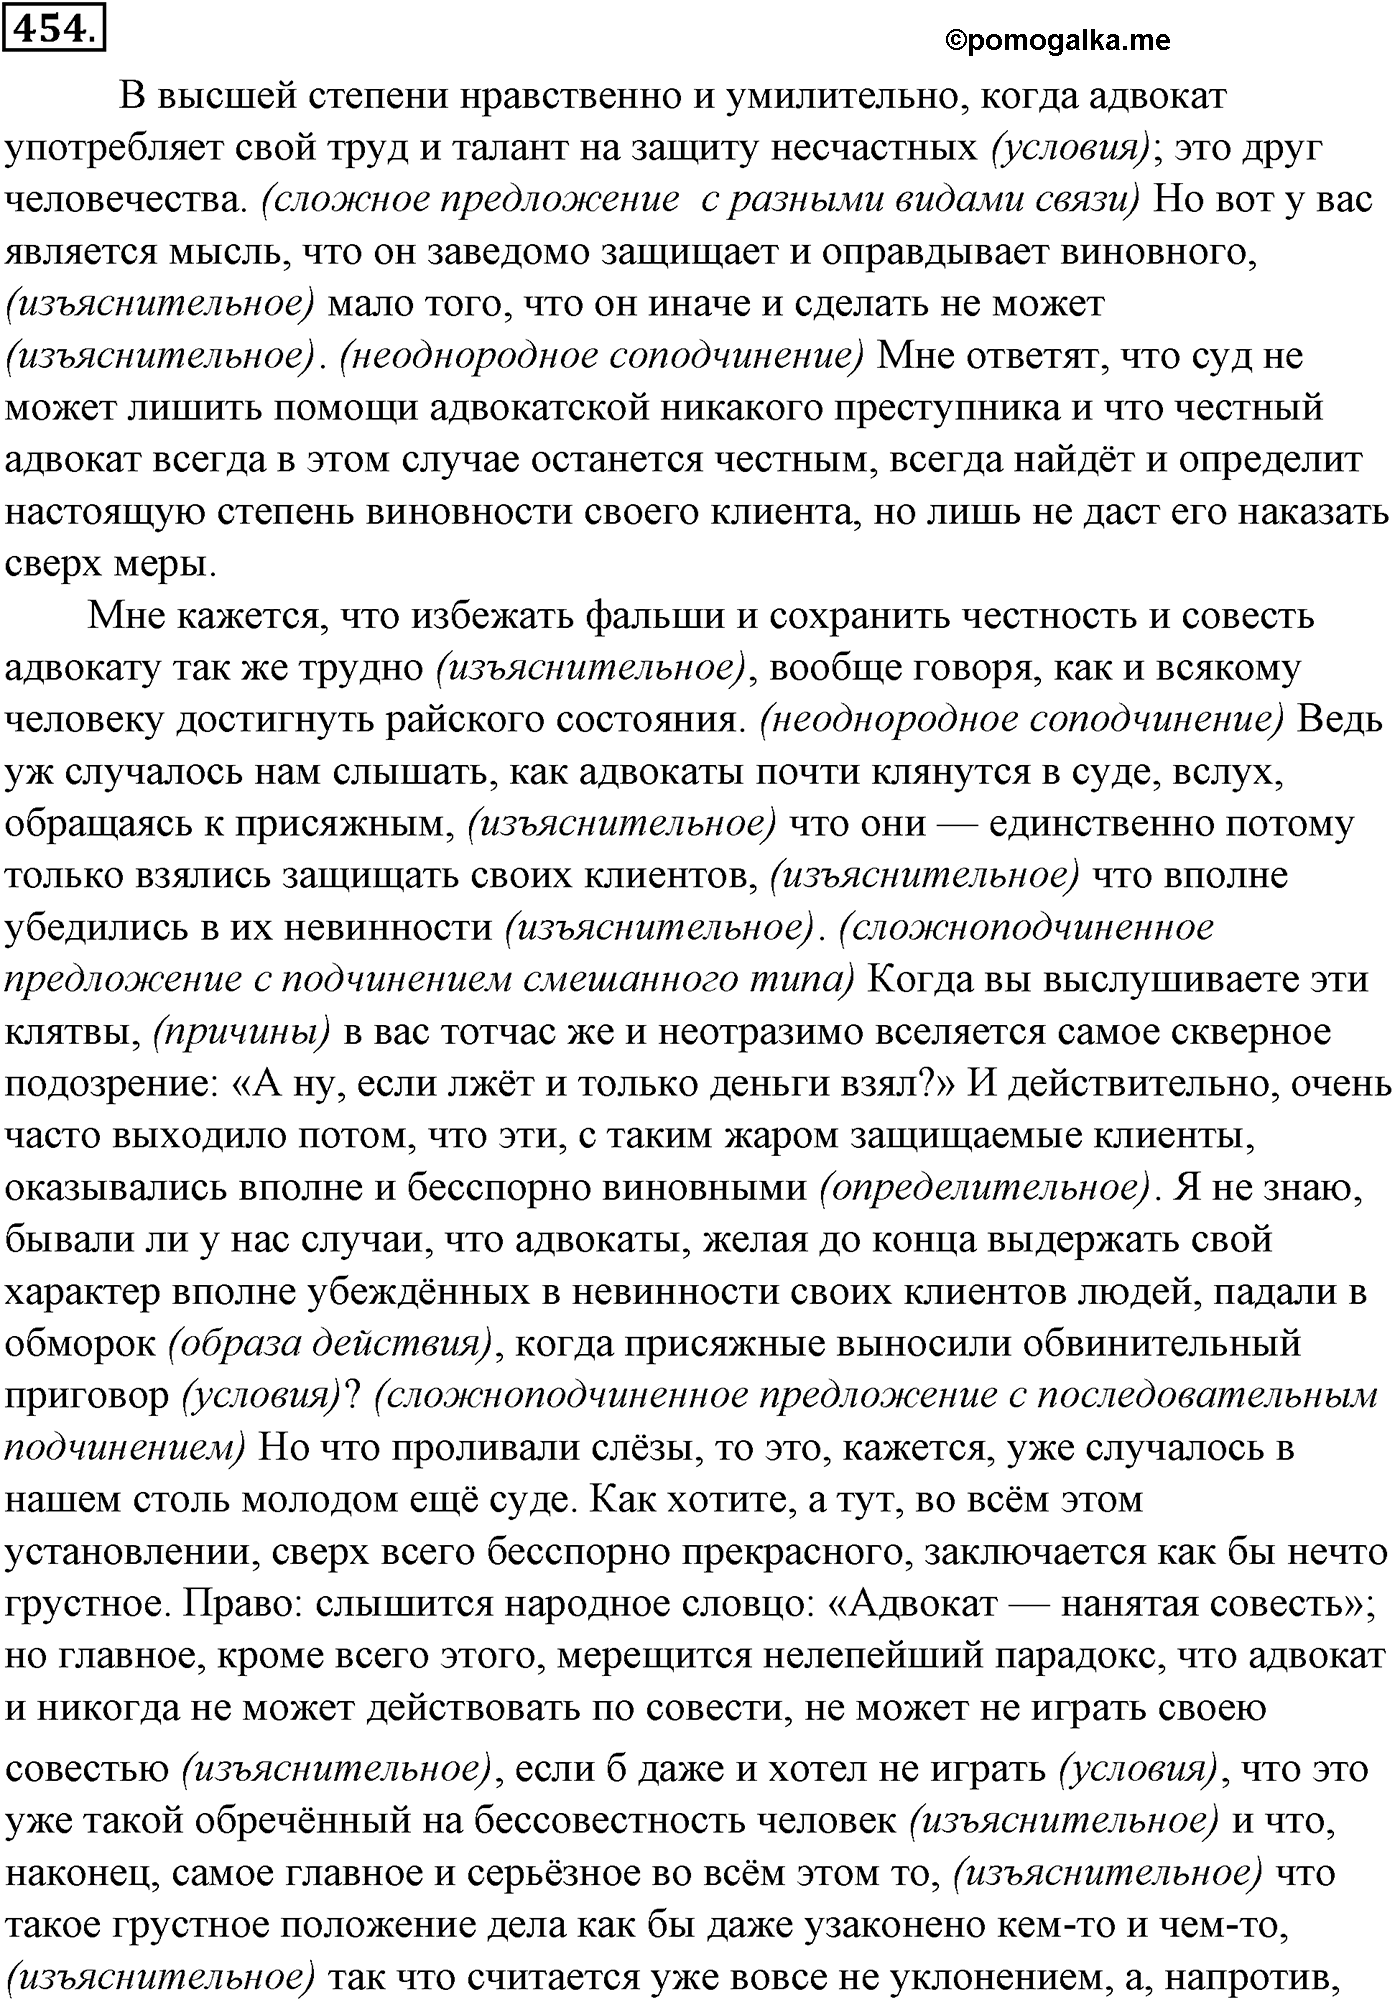 упражнение №454 русский язык 10-11 класс Гольцова